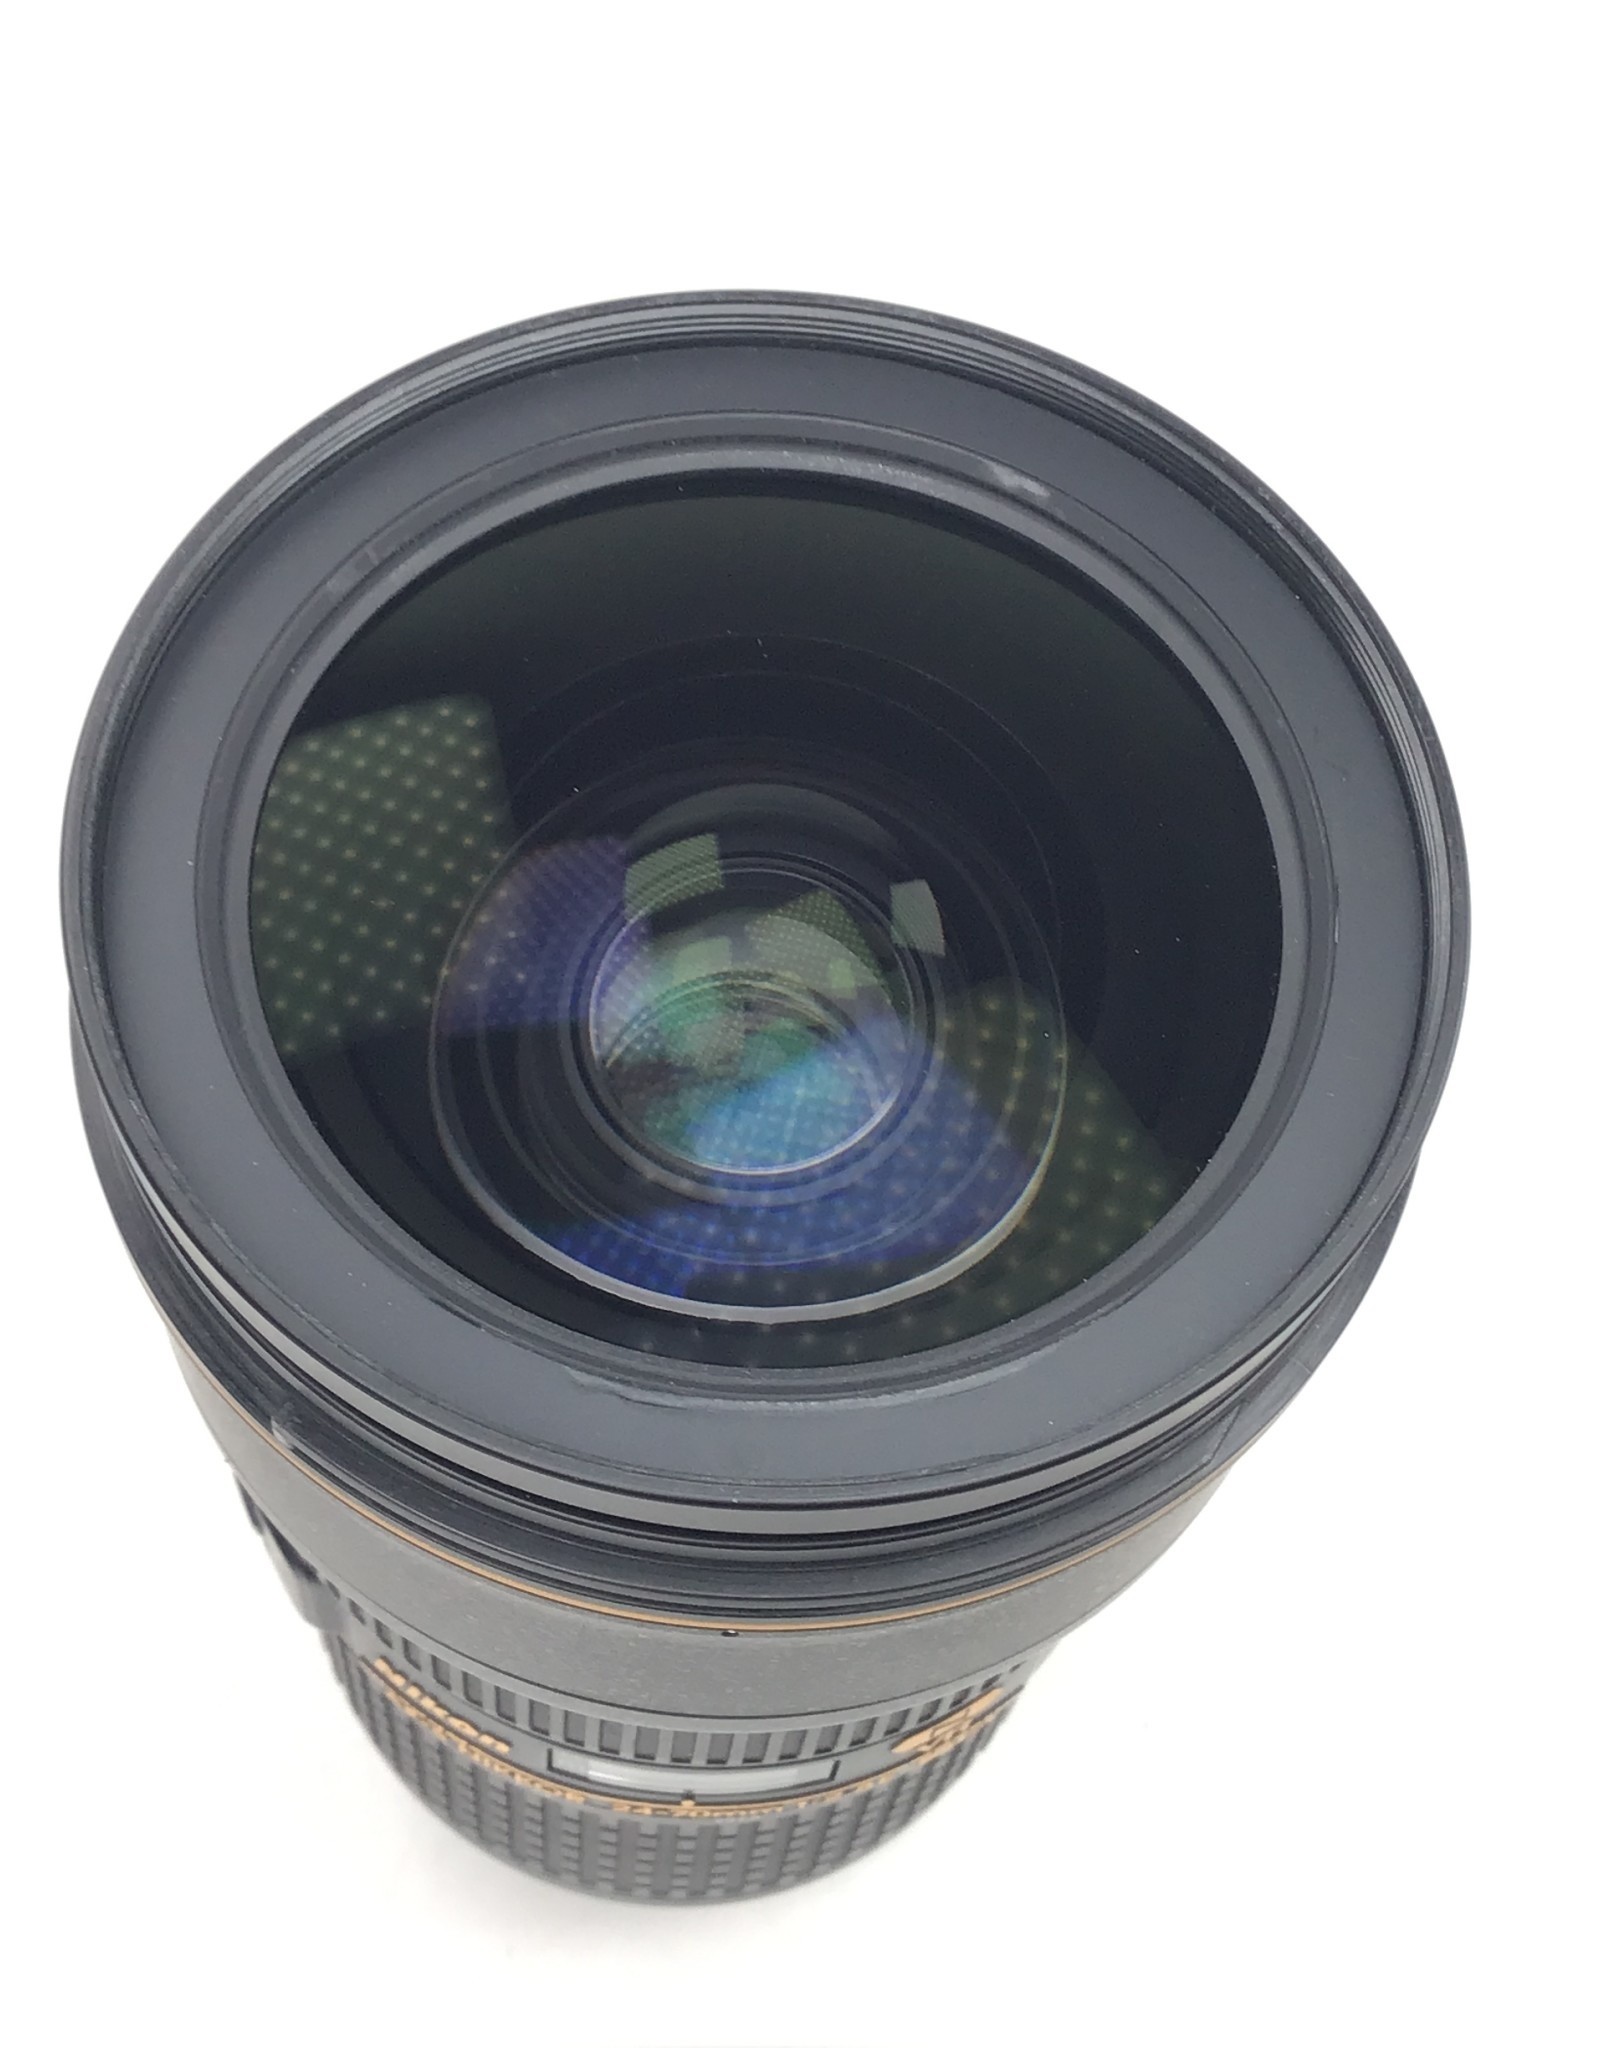 NIKON Nikon AF-S Nikkor 24-70mm f2.8E VR Lens Used Good